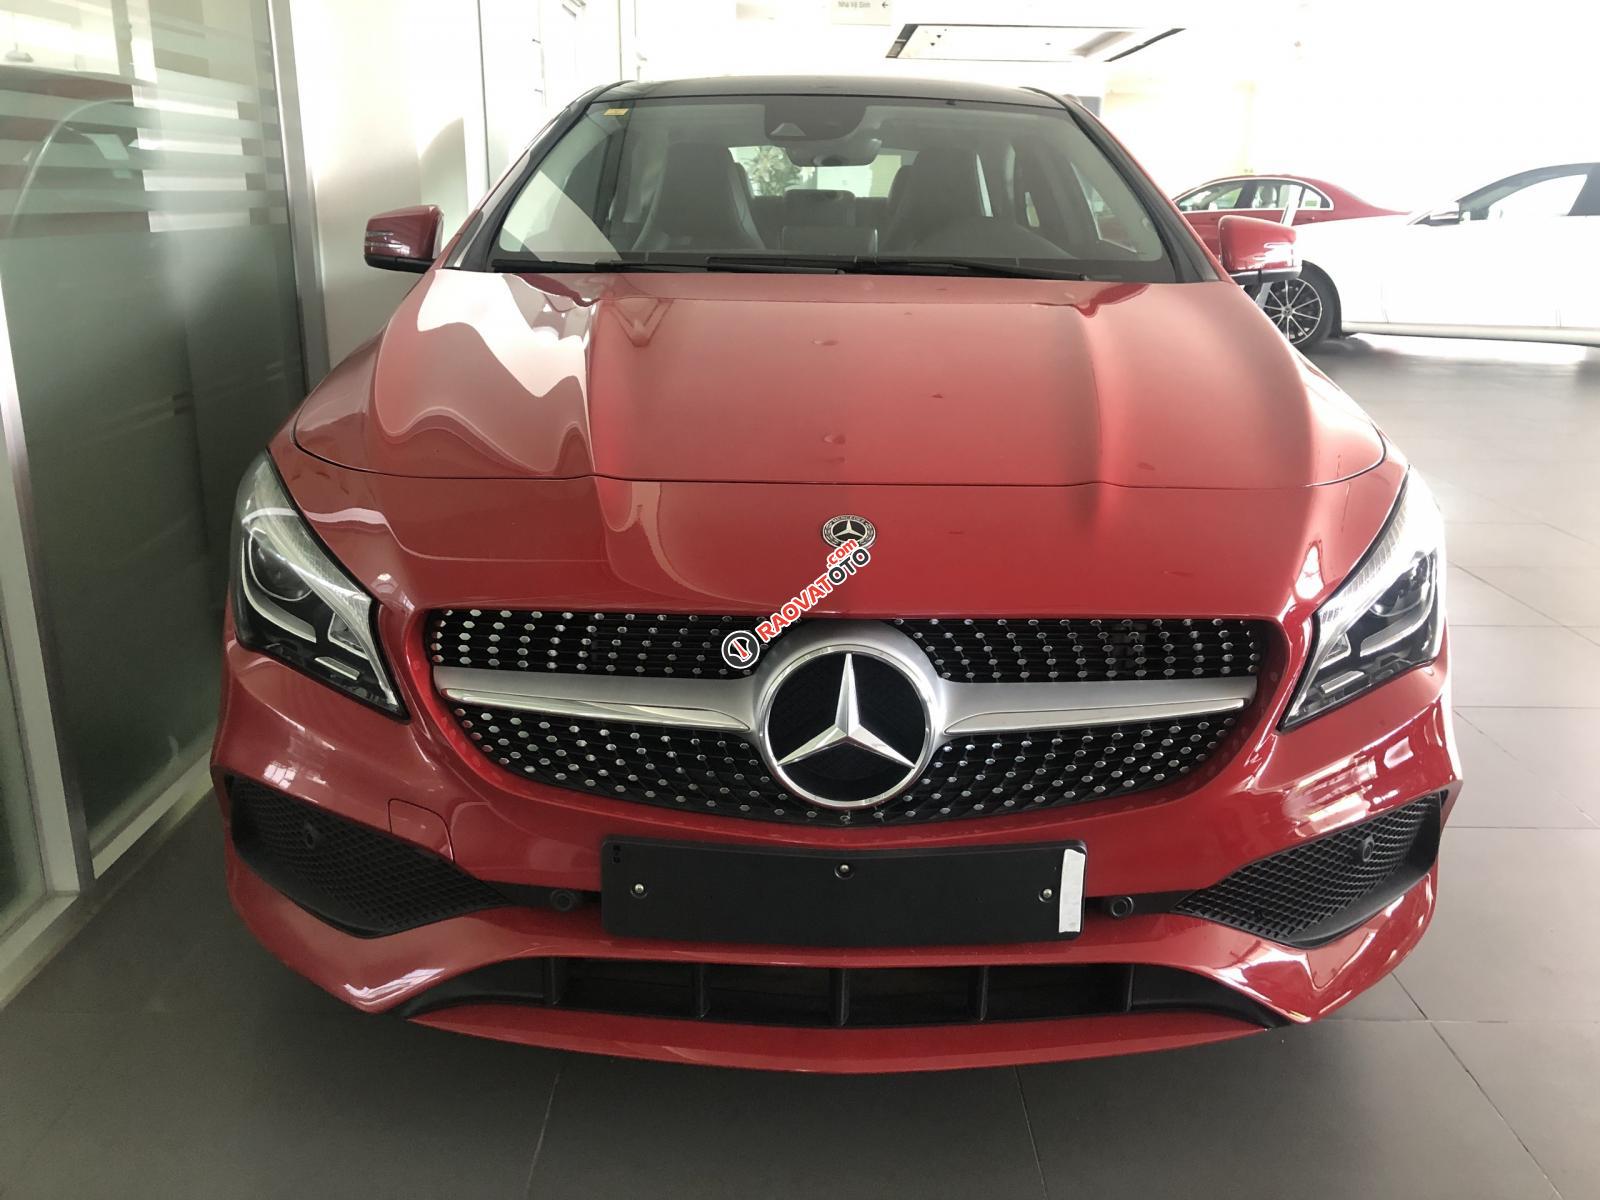 Bán xe Mercedes CLA 250 mới, màu đỏ, xe nhập khẩu, vay trả góp 80% giá trị xe, lãi 0.77%/tháng cố định 36 tháng-5